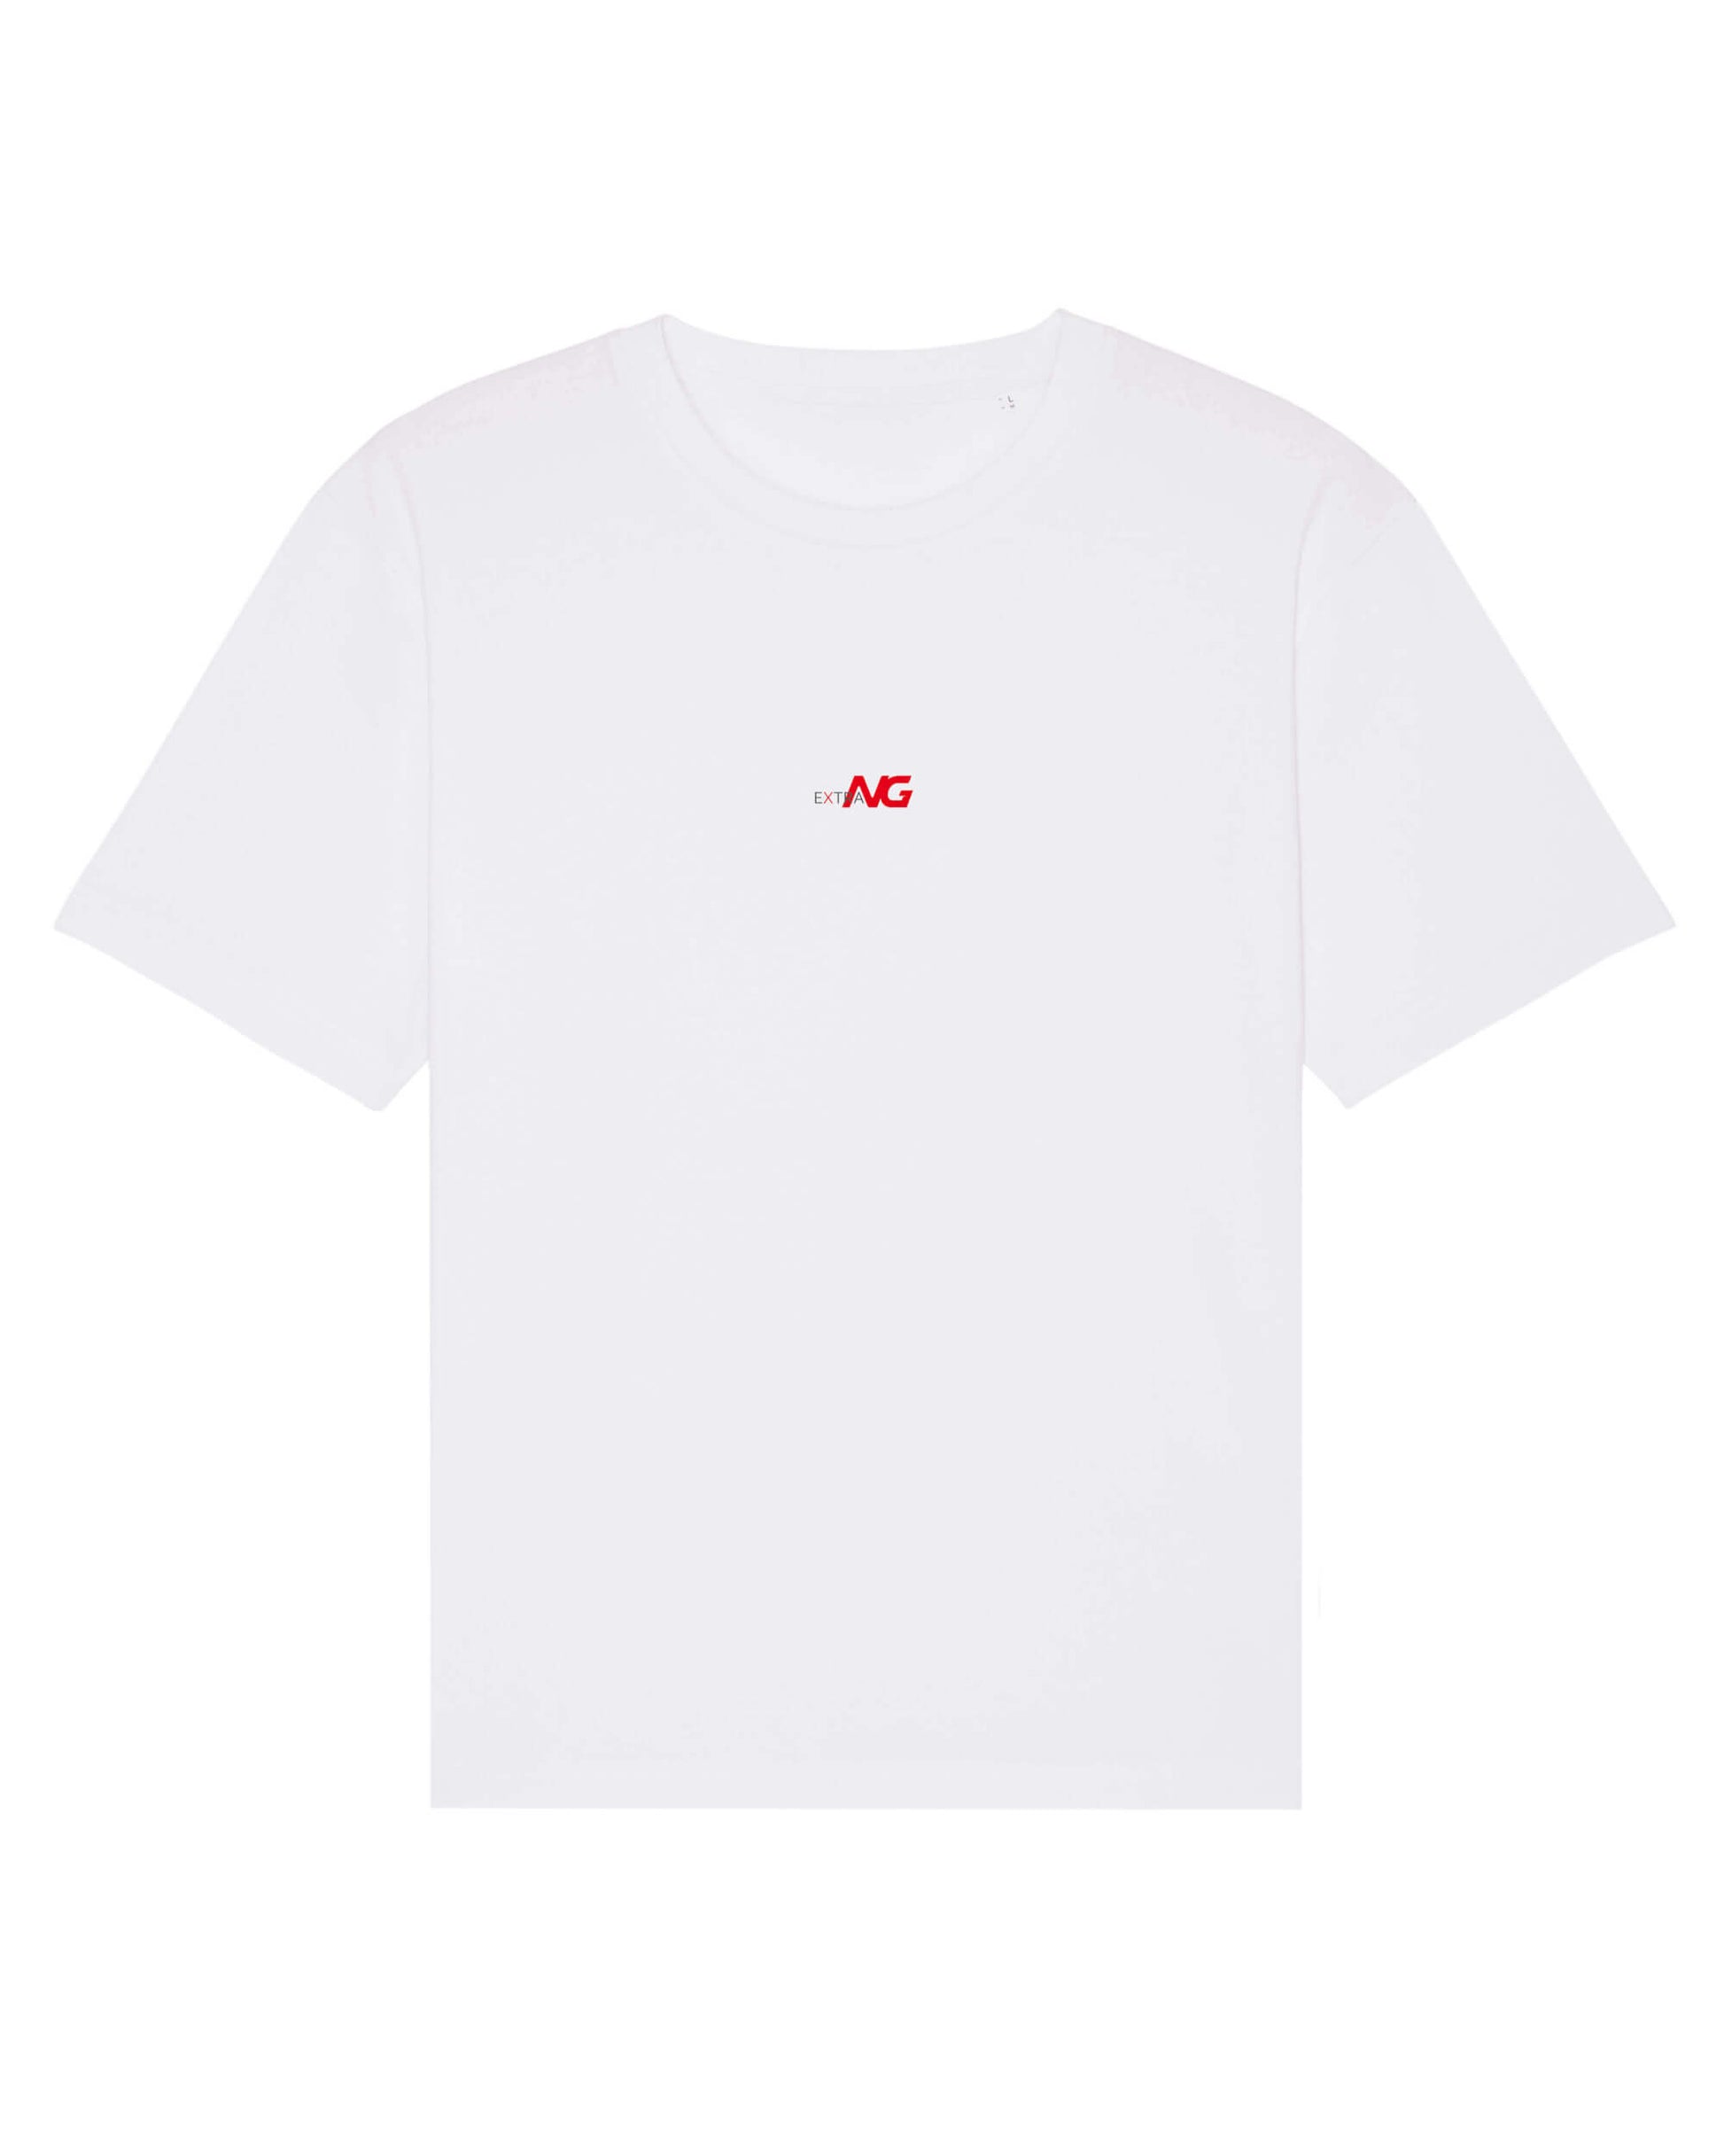 Produktbild eines weißen T-Shirts aus 100% Bio-Baumwolle mit dem EXTRA NG Typlogo, mittig auf der Vorderseite.